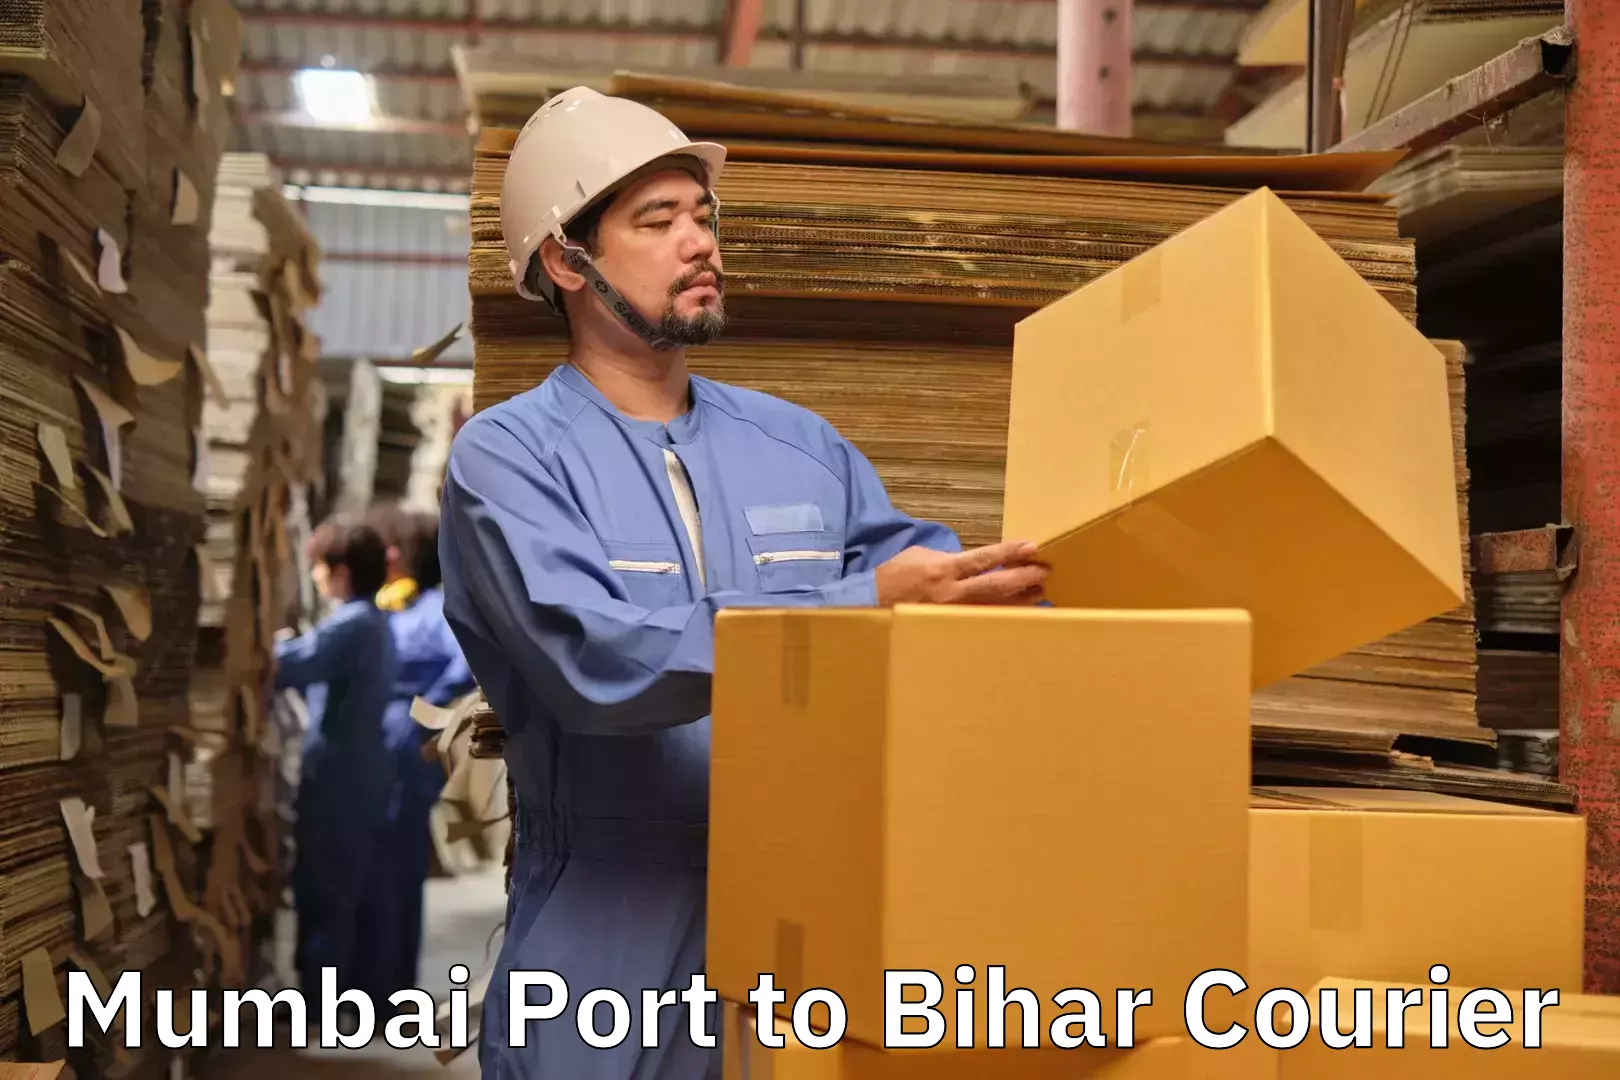 Baggage courier rates Mumbai Port to Bihar